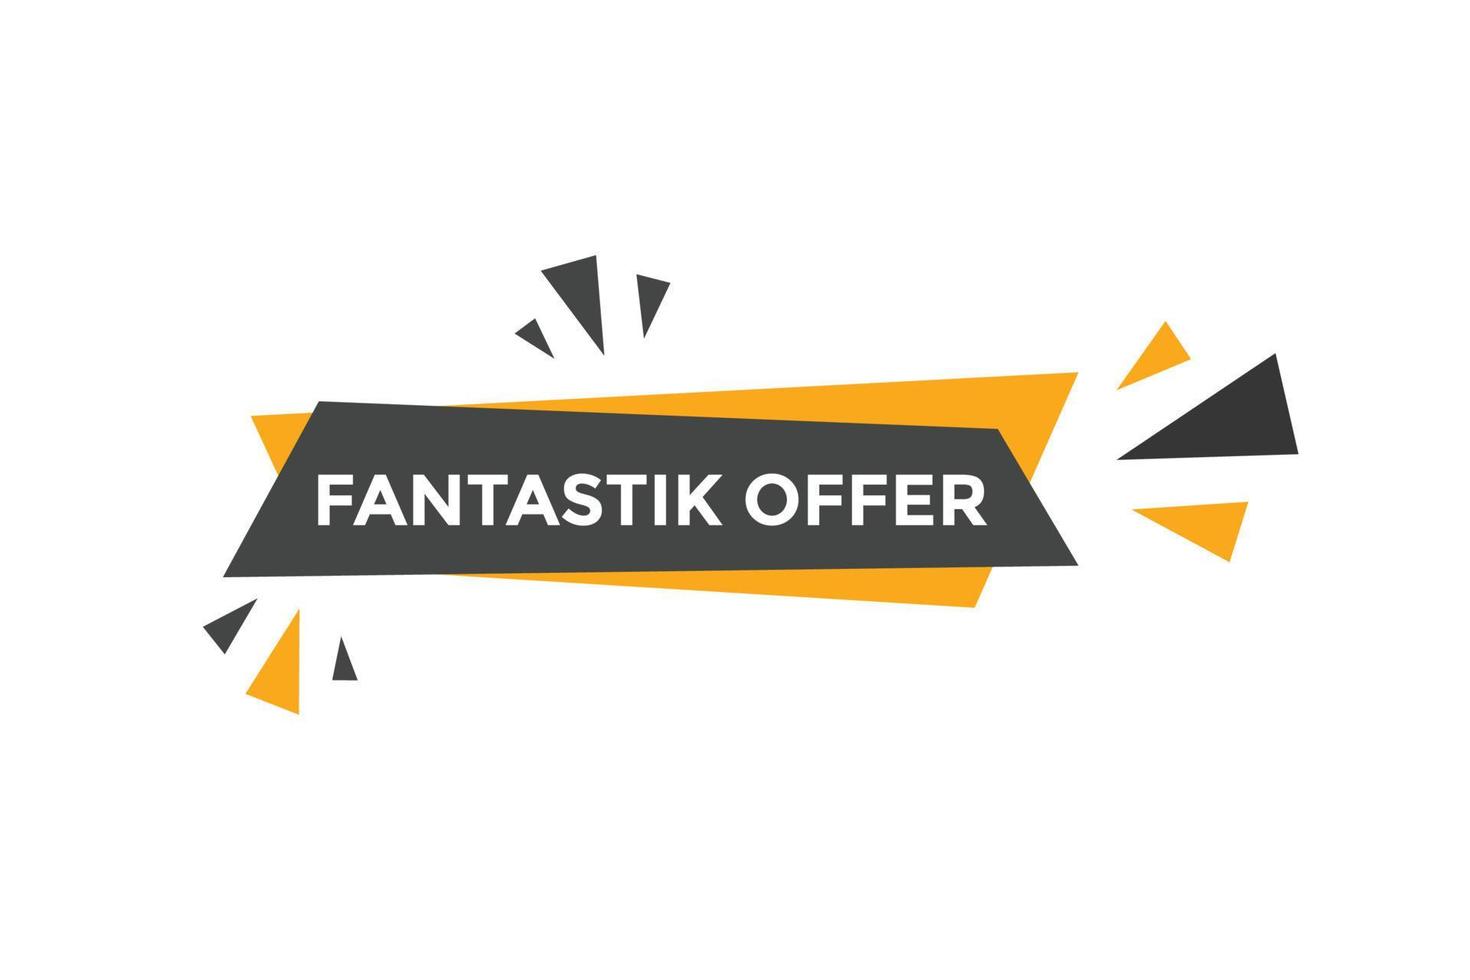 Fantastik offer button. Fantastik offer sign speech bubble. Web banner label template. Vector Illustration